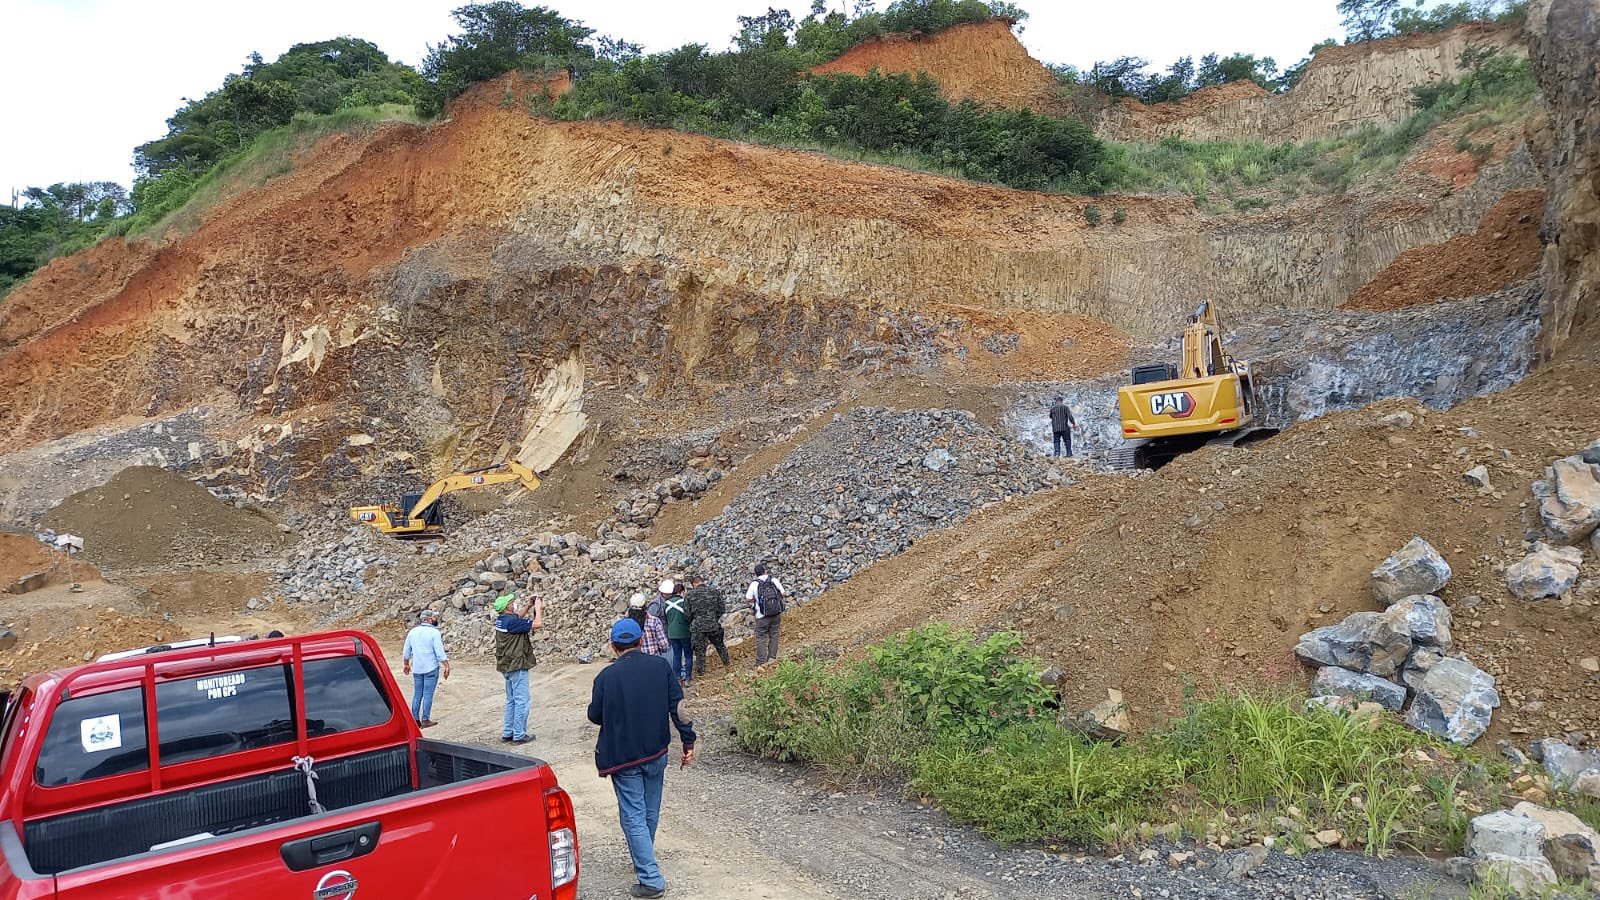 Sentencia condenatoria por explotación ilegal de recursos naturales en Sabanagrande